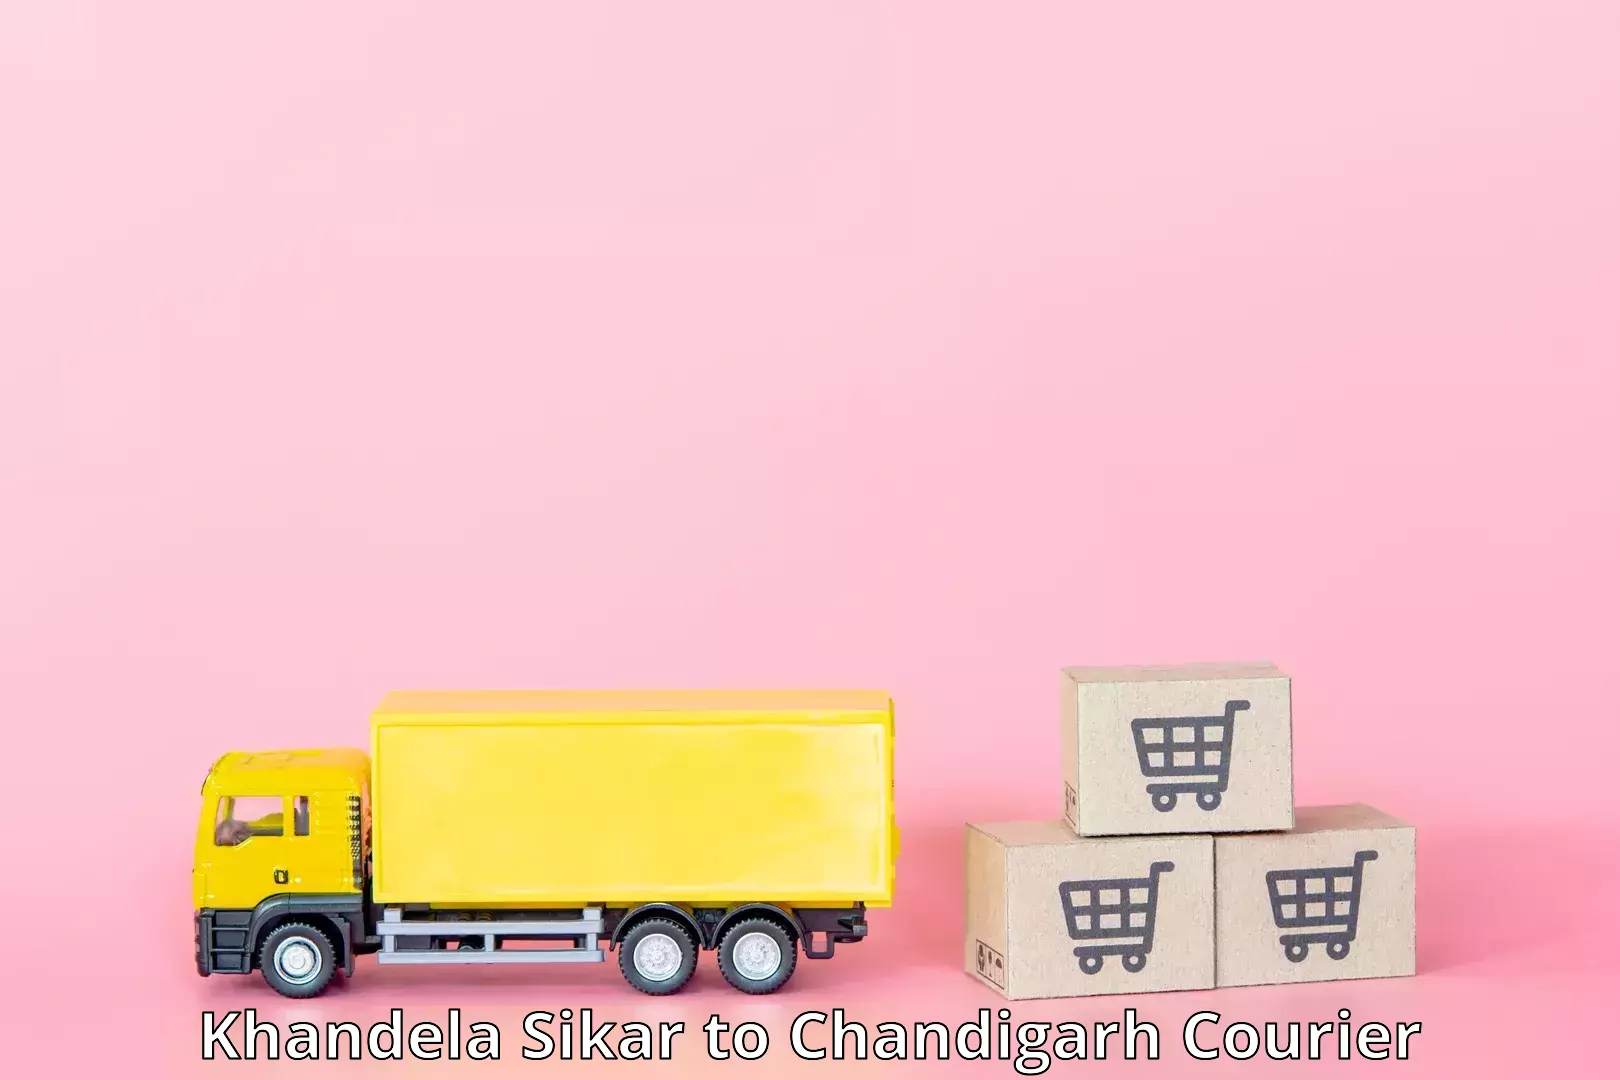 Cross-border shipping Khandela Sikar to Chandigarh